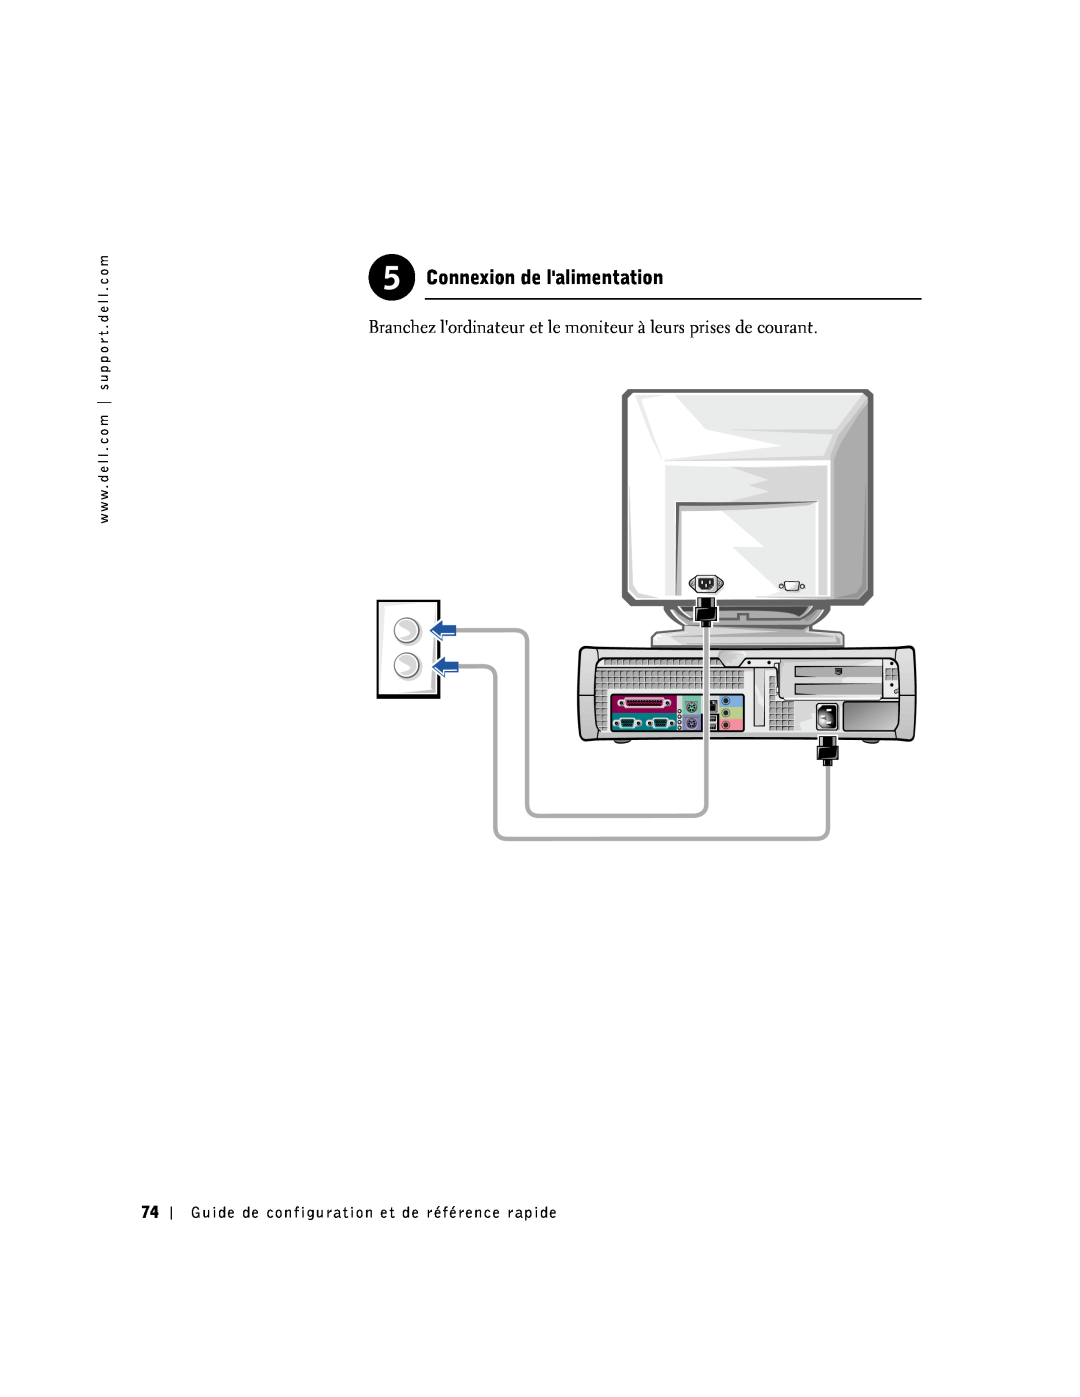 Dell 1G155 manual Connexion de lalimentation, Branchez lordinateur et le moniteur à leurs prises de courant 